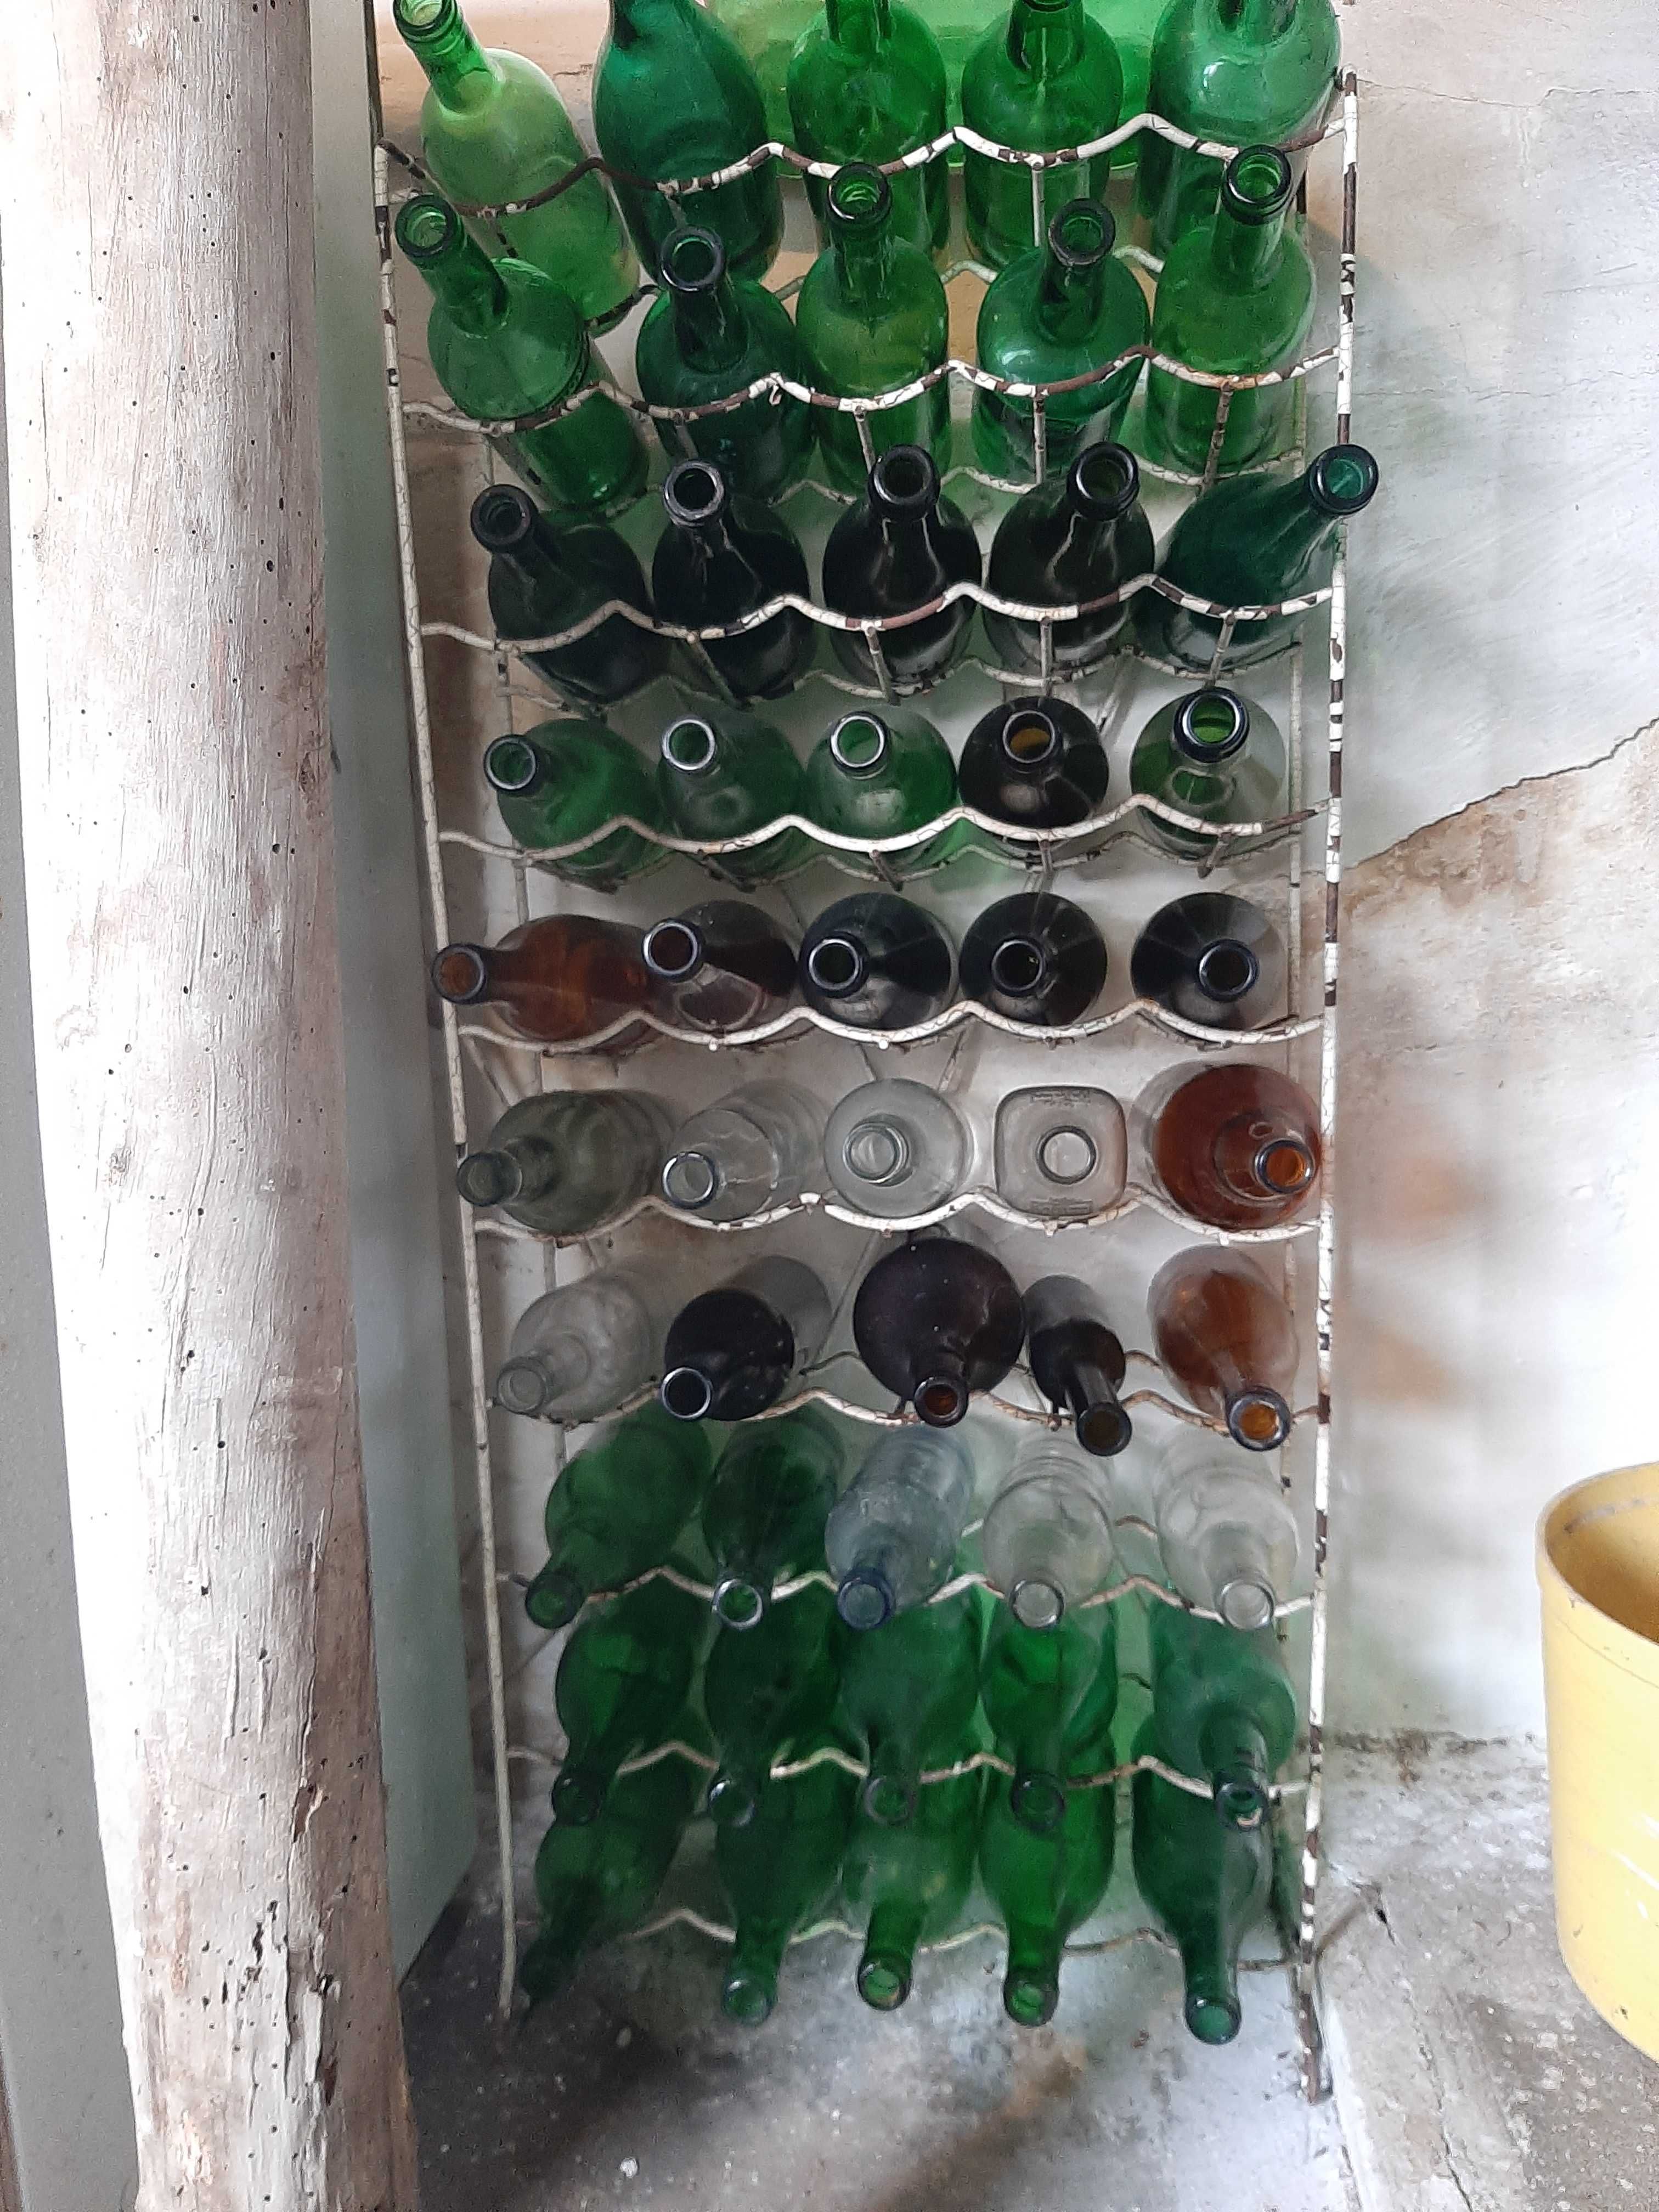 43 garrafas novas.verdes.castanhas e brancas.